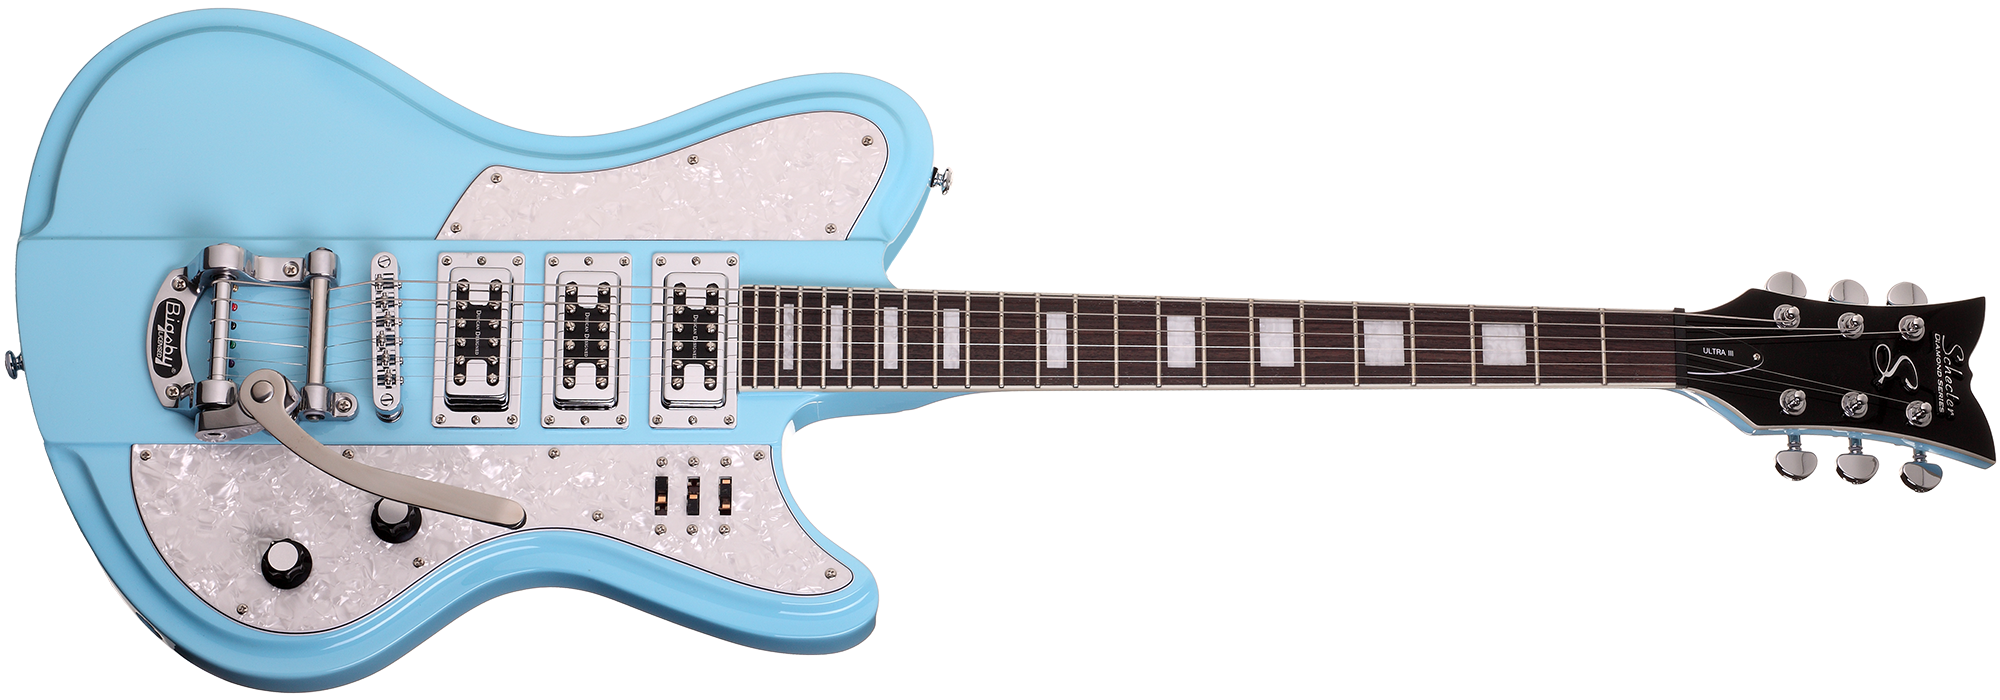 Schecter ULTRA-III-VBL Vintage Blue Guitar w Duncan Designed FG 101 3155-SHC